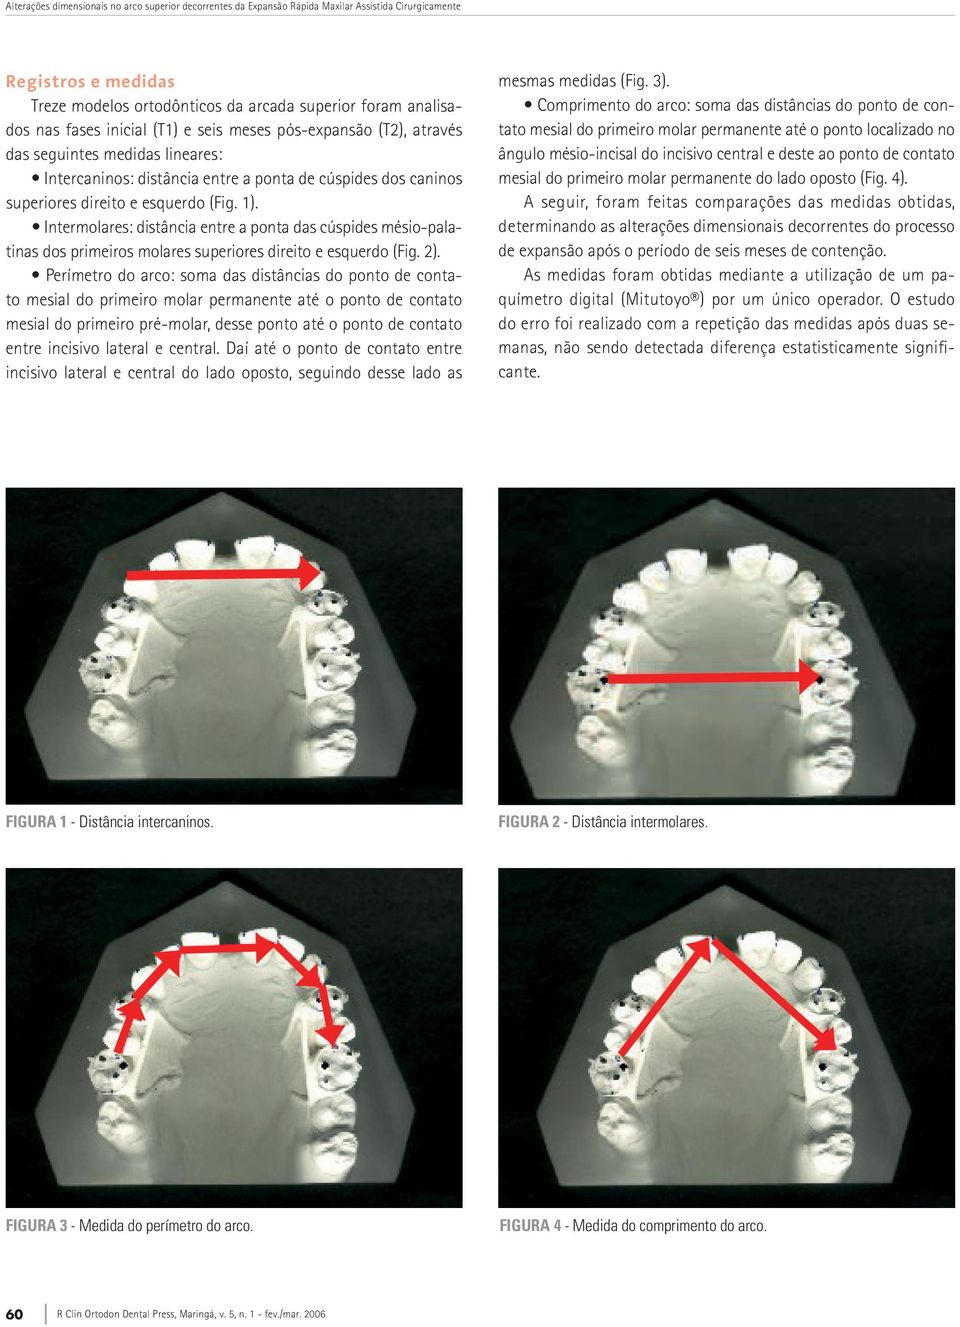 Intermolares: distância entre a ponta das cúspides mésio-palatinas dos primeiros molares superiores direito e esquerdo (Fig. 2).